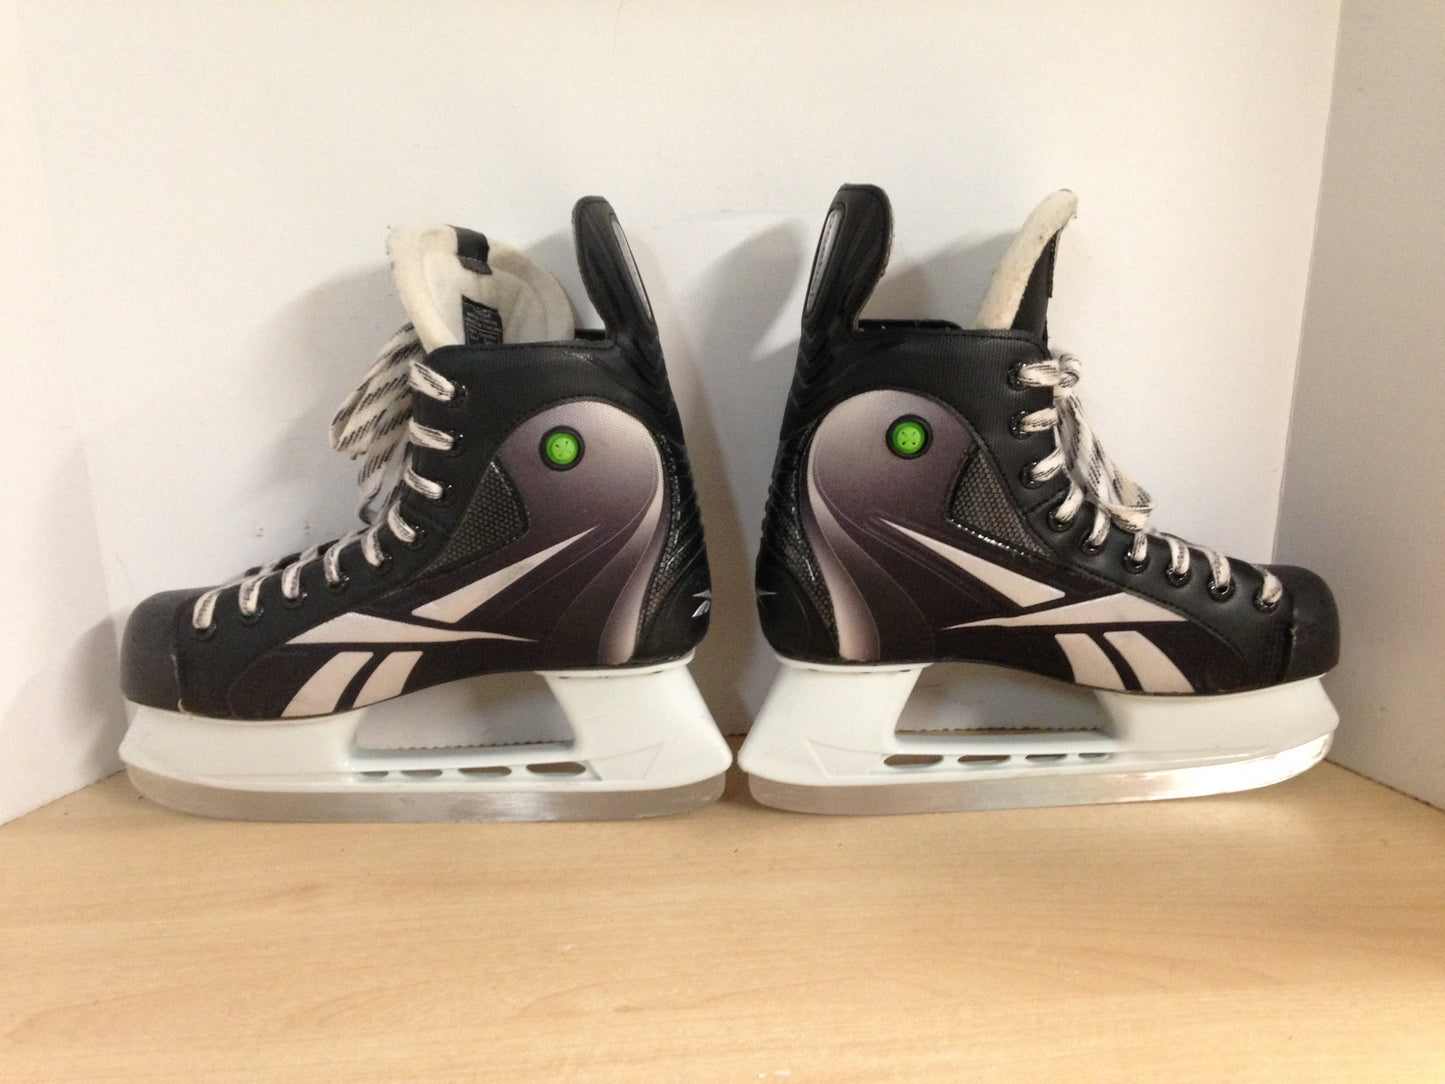 Hockey Skates Men's Size 8.5 Shoe Size Reebok Pump As New